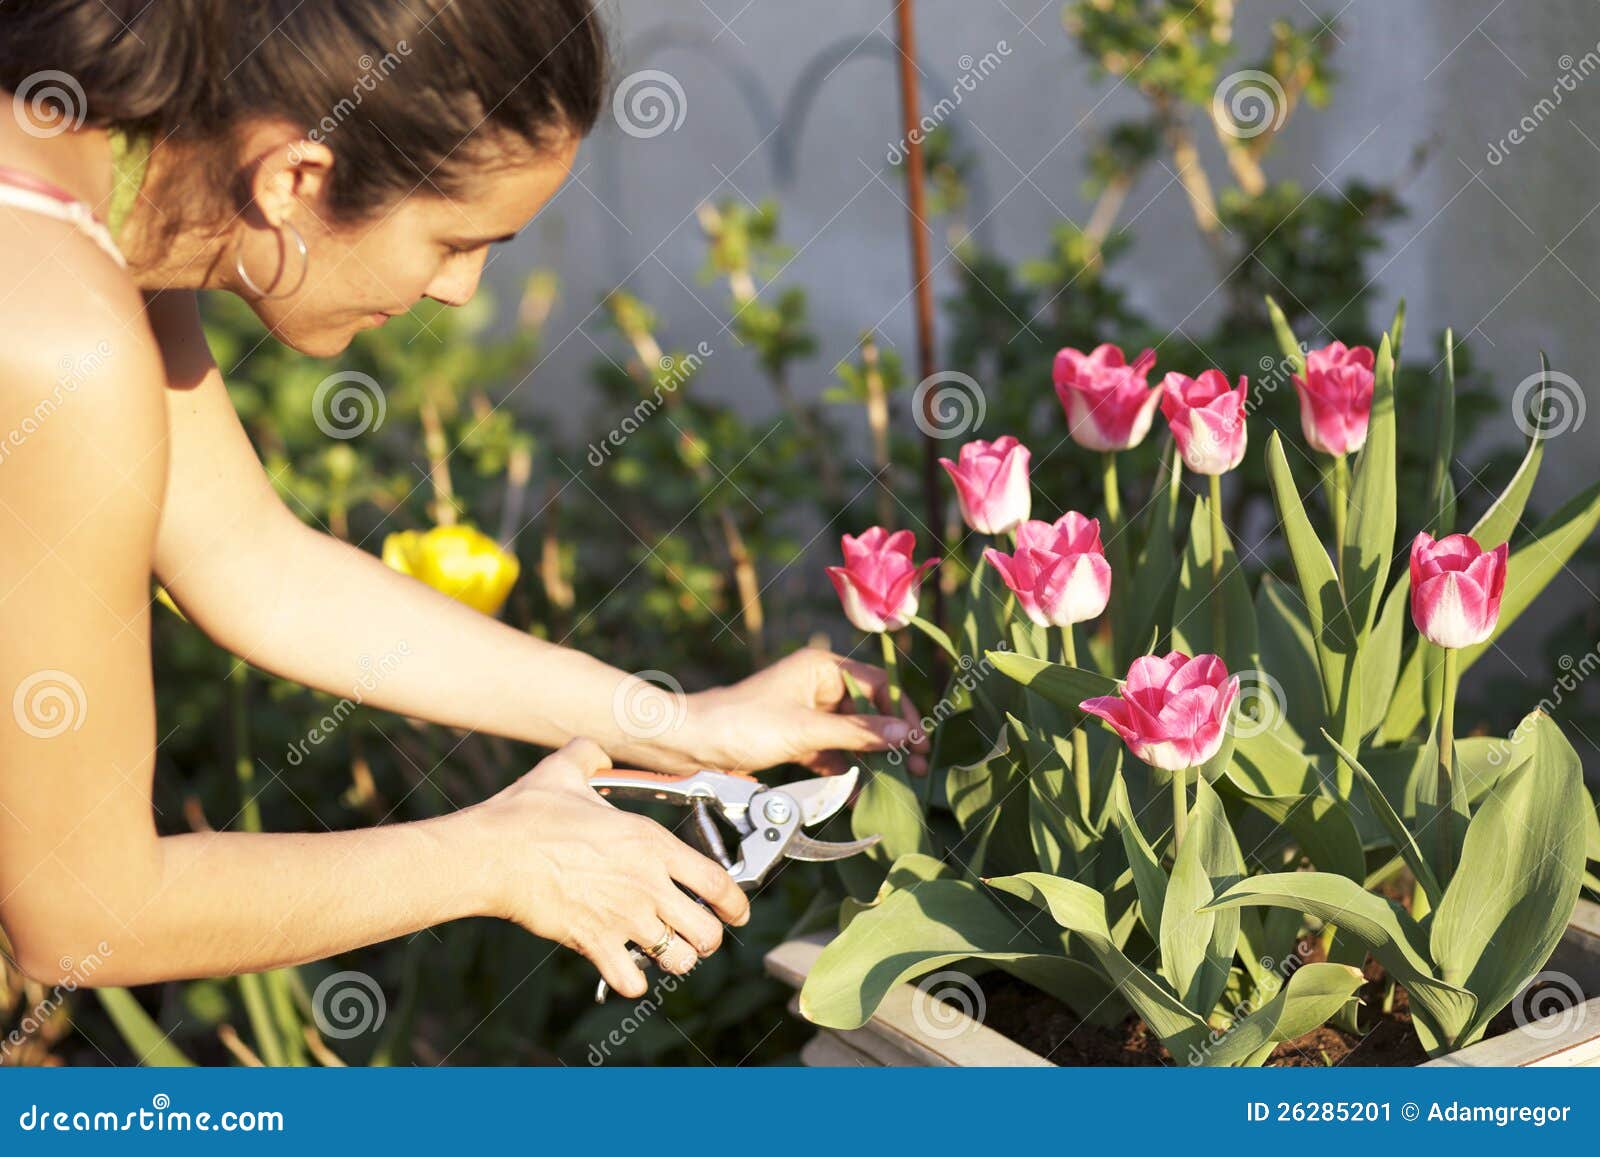 Нужно ли подрезать тюльпаны в вазе